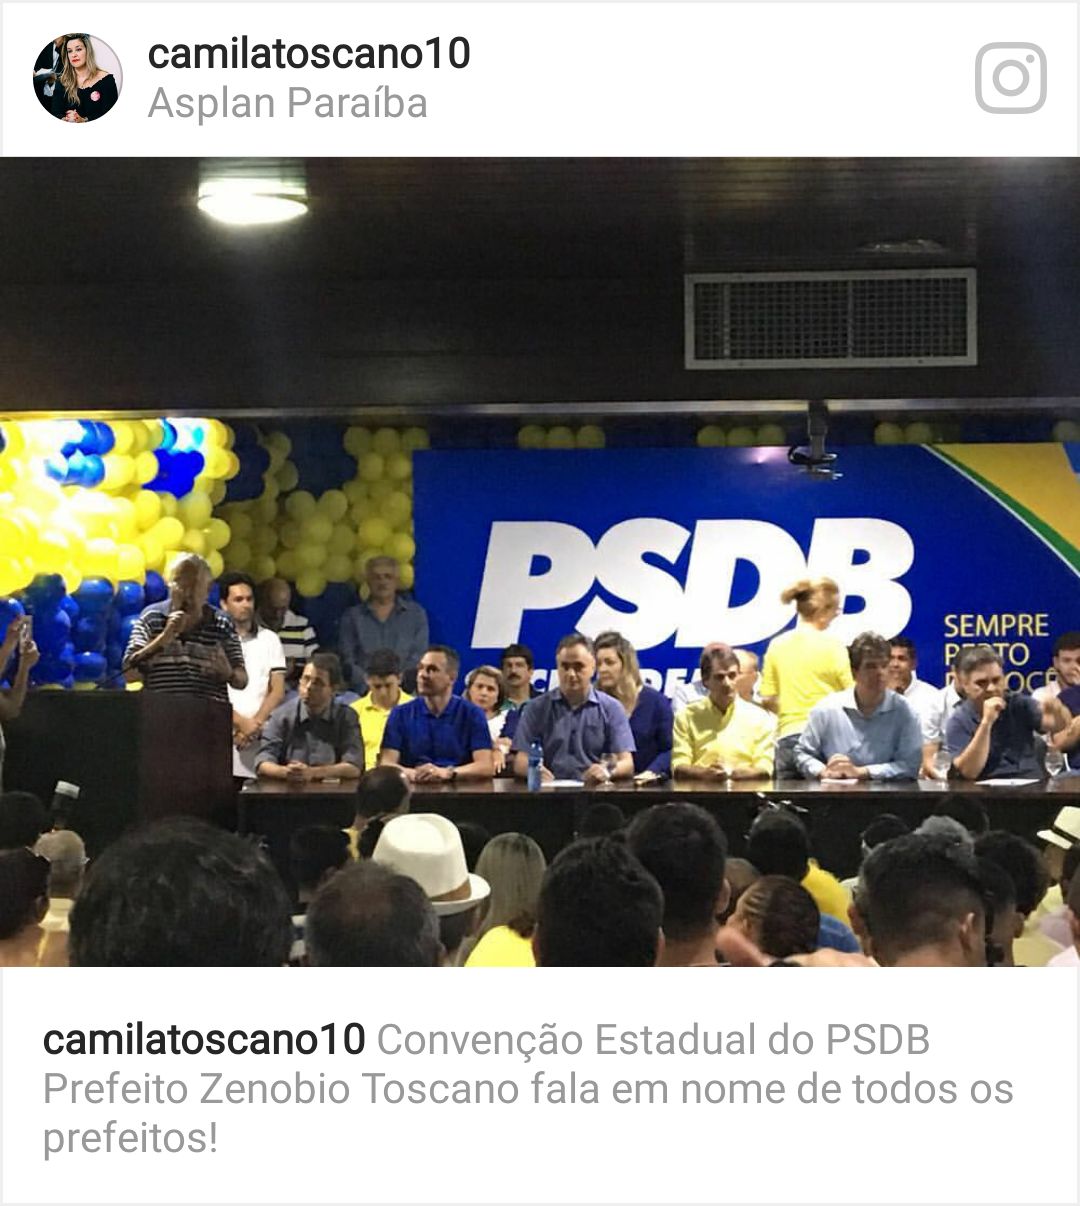 Zenóbio diz na convenção do PSDB pode se unir aos Paulino em GB pela união das oposições em 2018